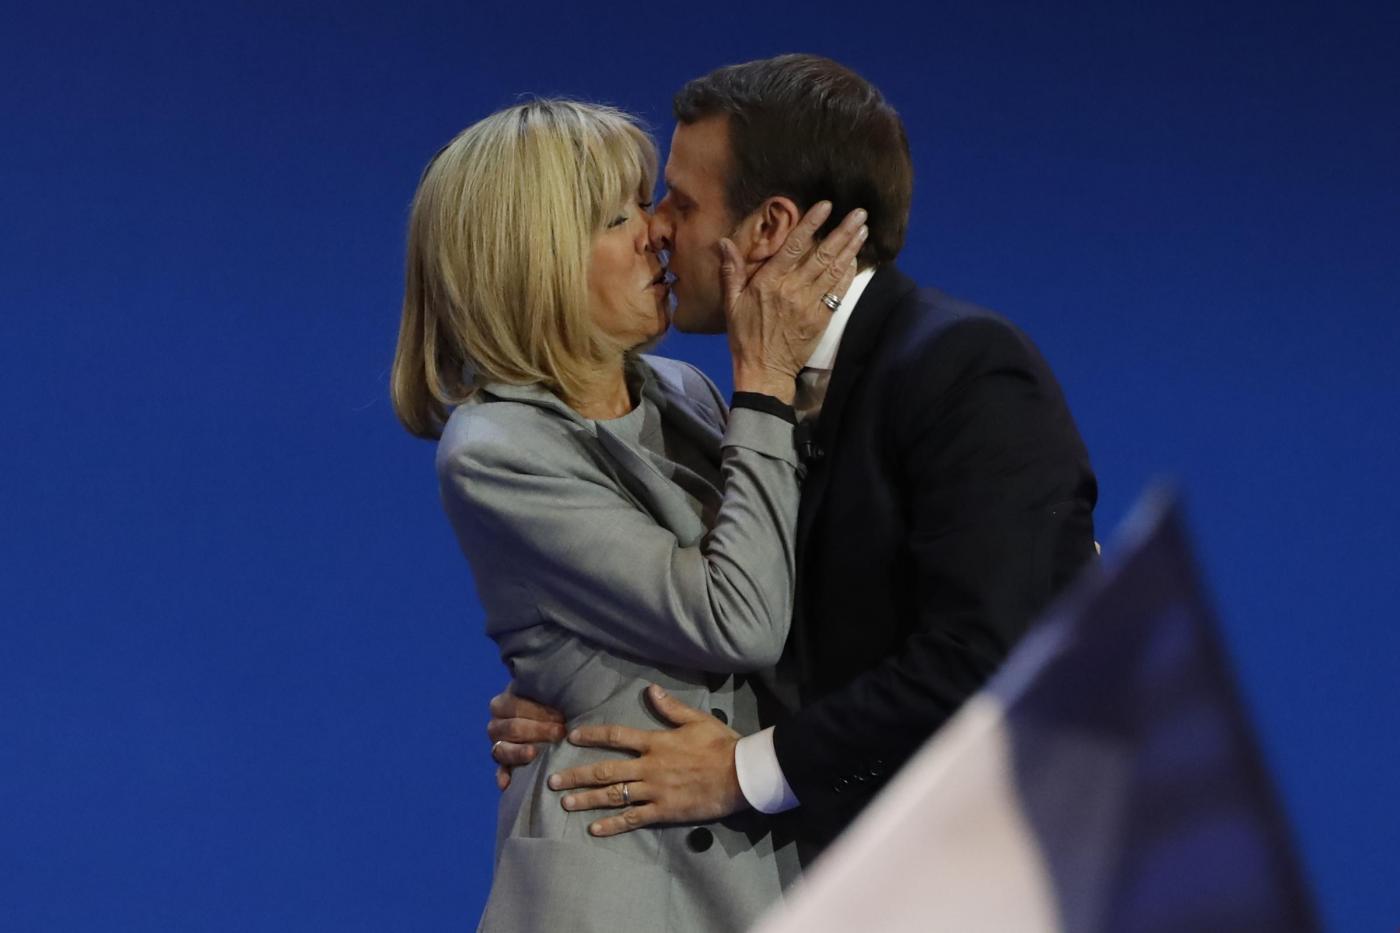 Macron e lթnseparabile Brigitte, lաmore fuori dagli schemi